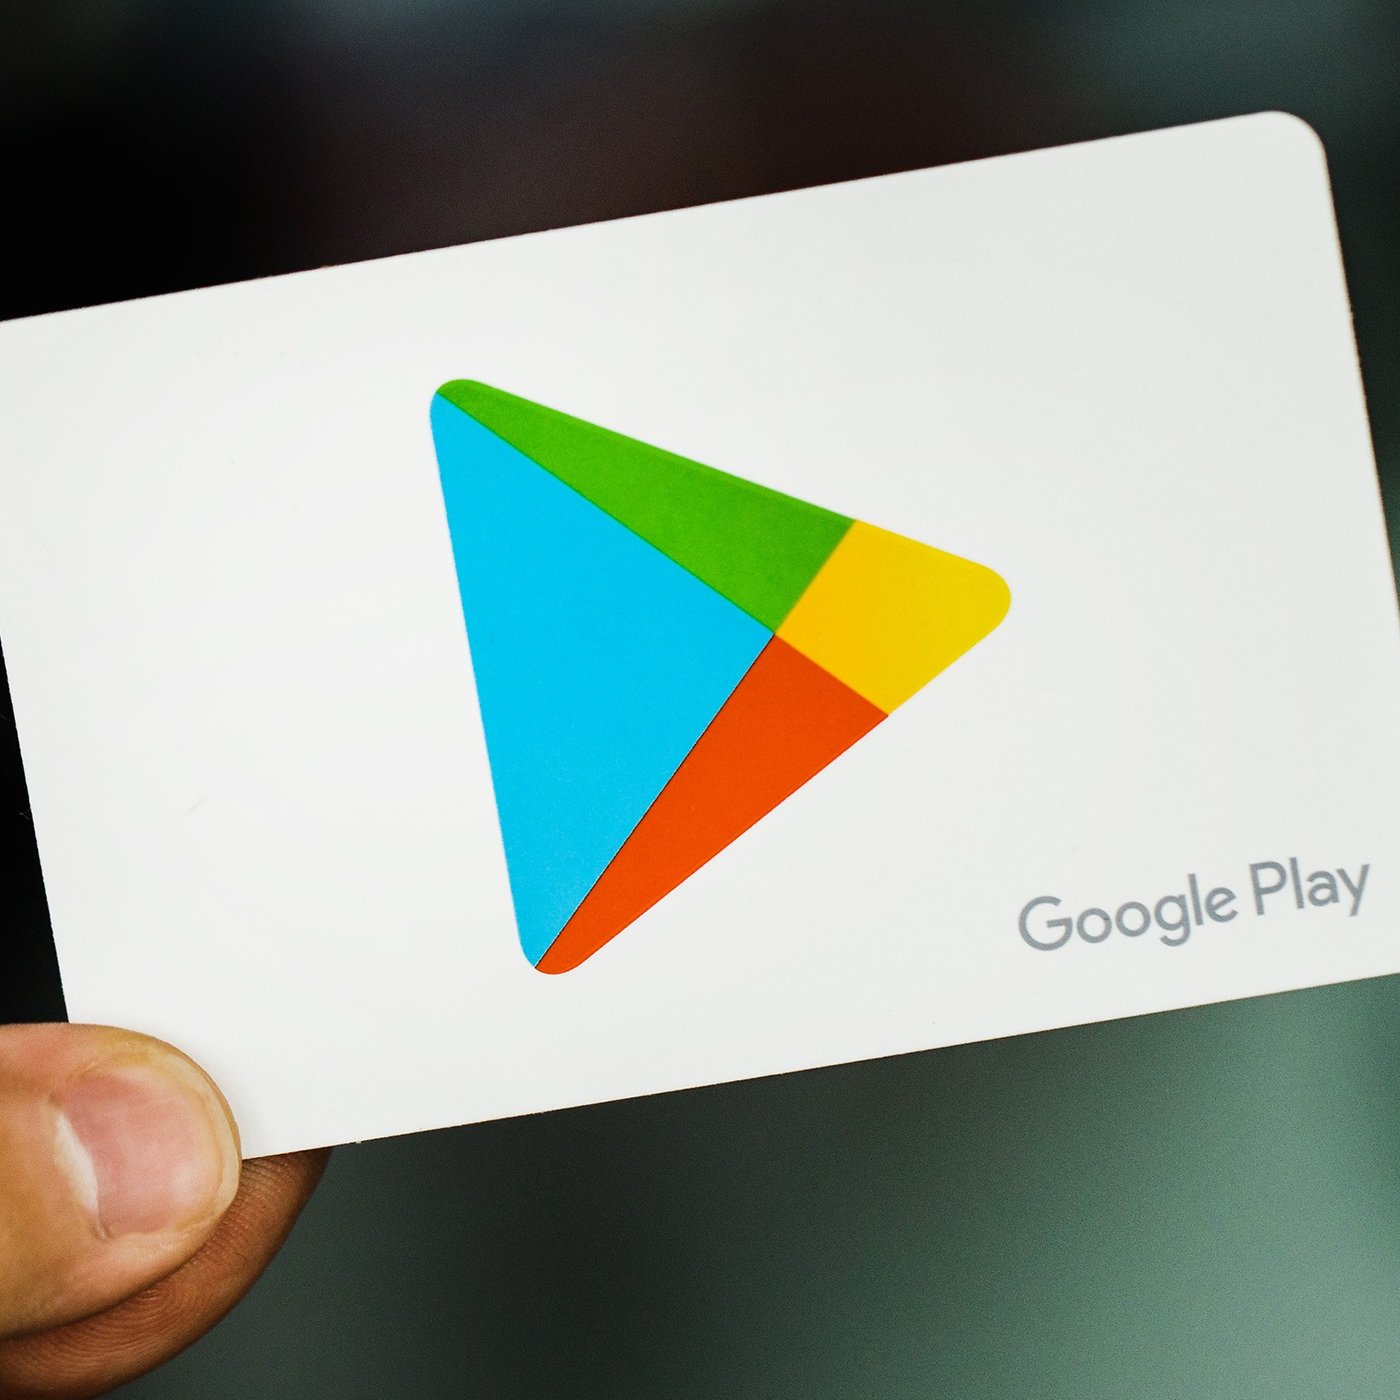 Google Play. Ограничения гугл плей. Российские приложения для андроид 2022 года. Google Play 120 x 120 px.